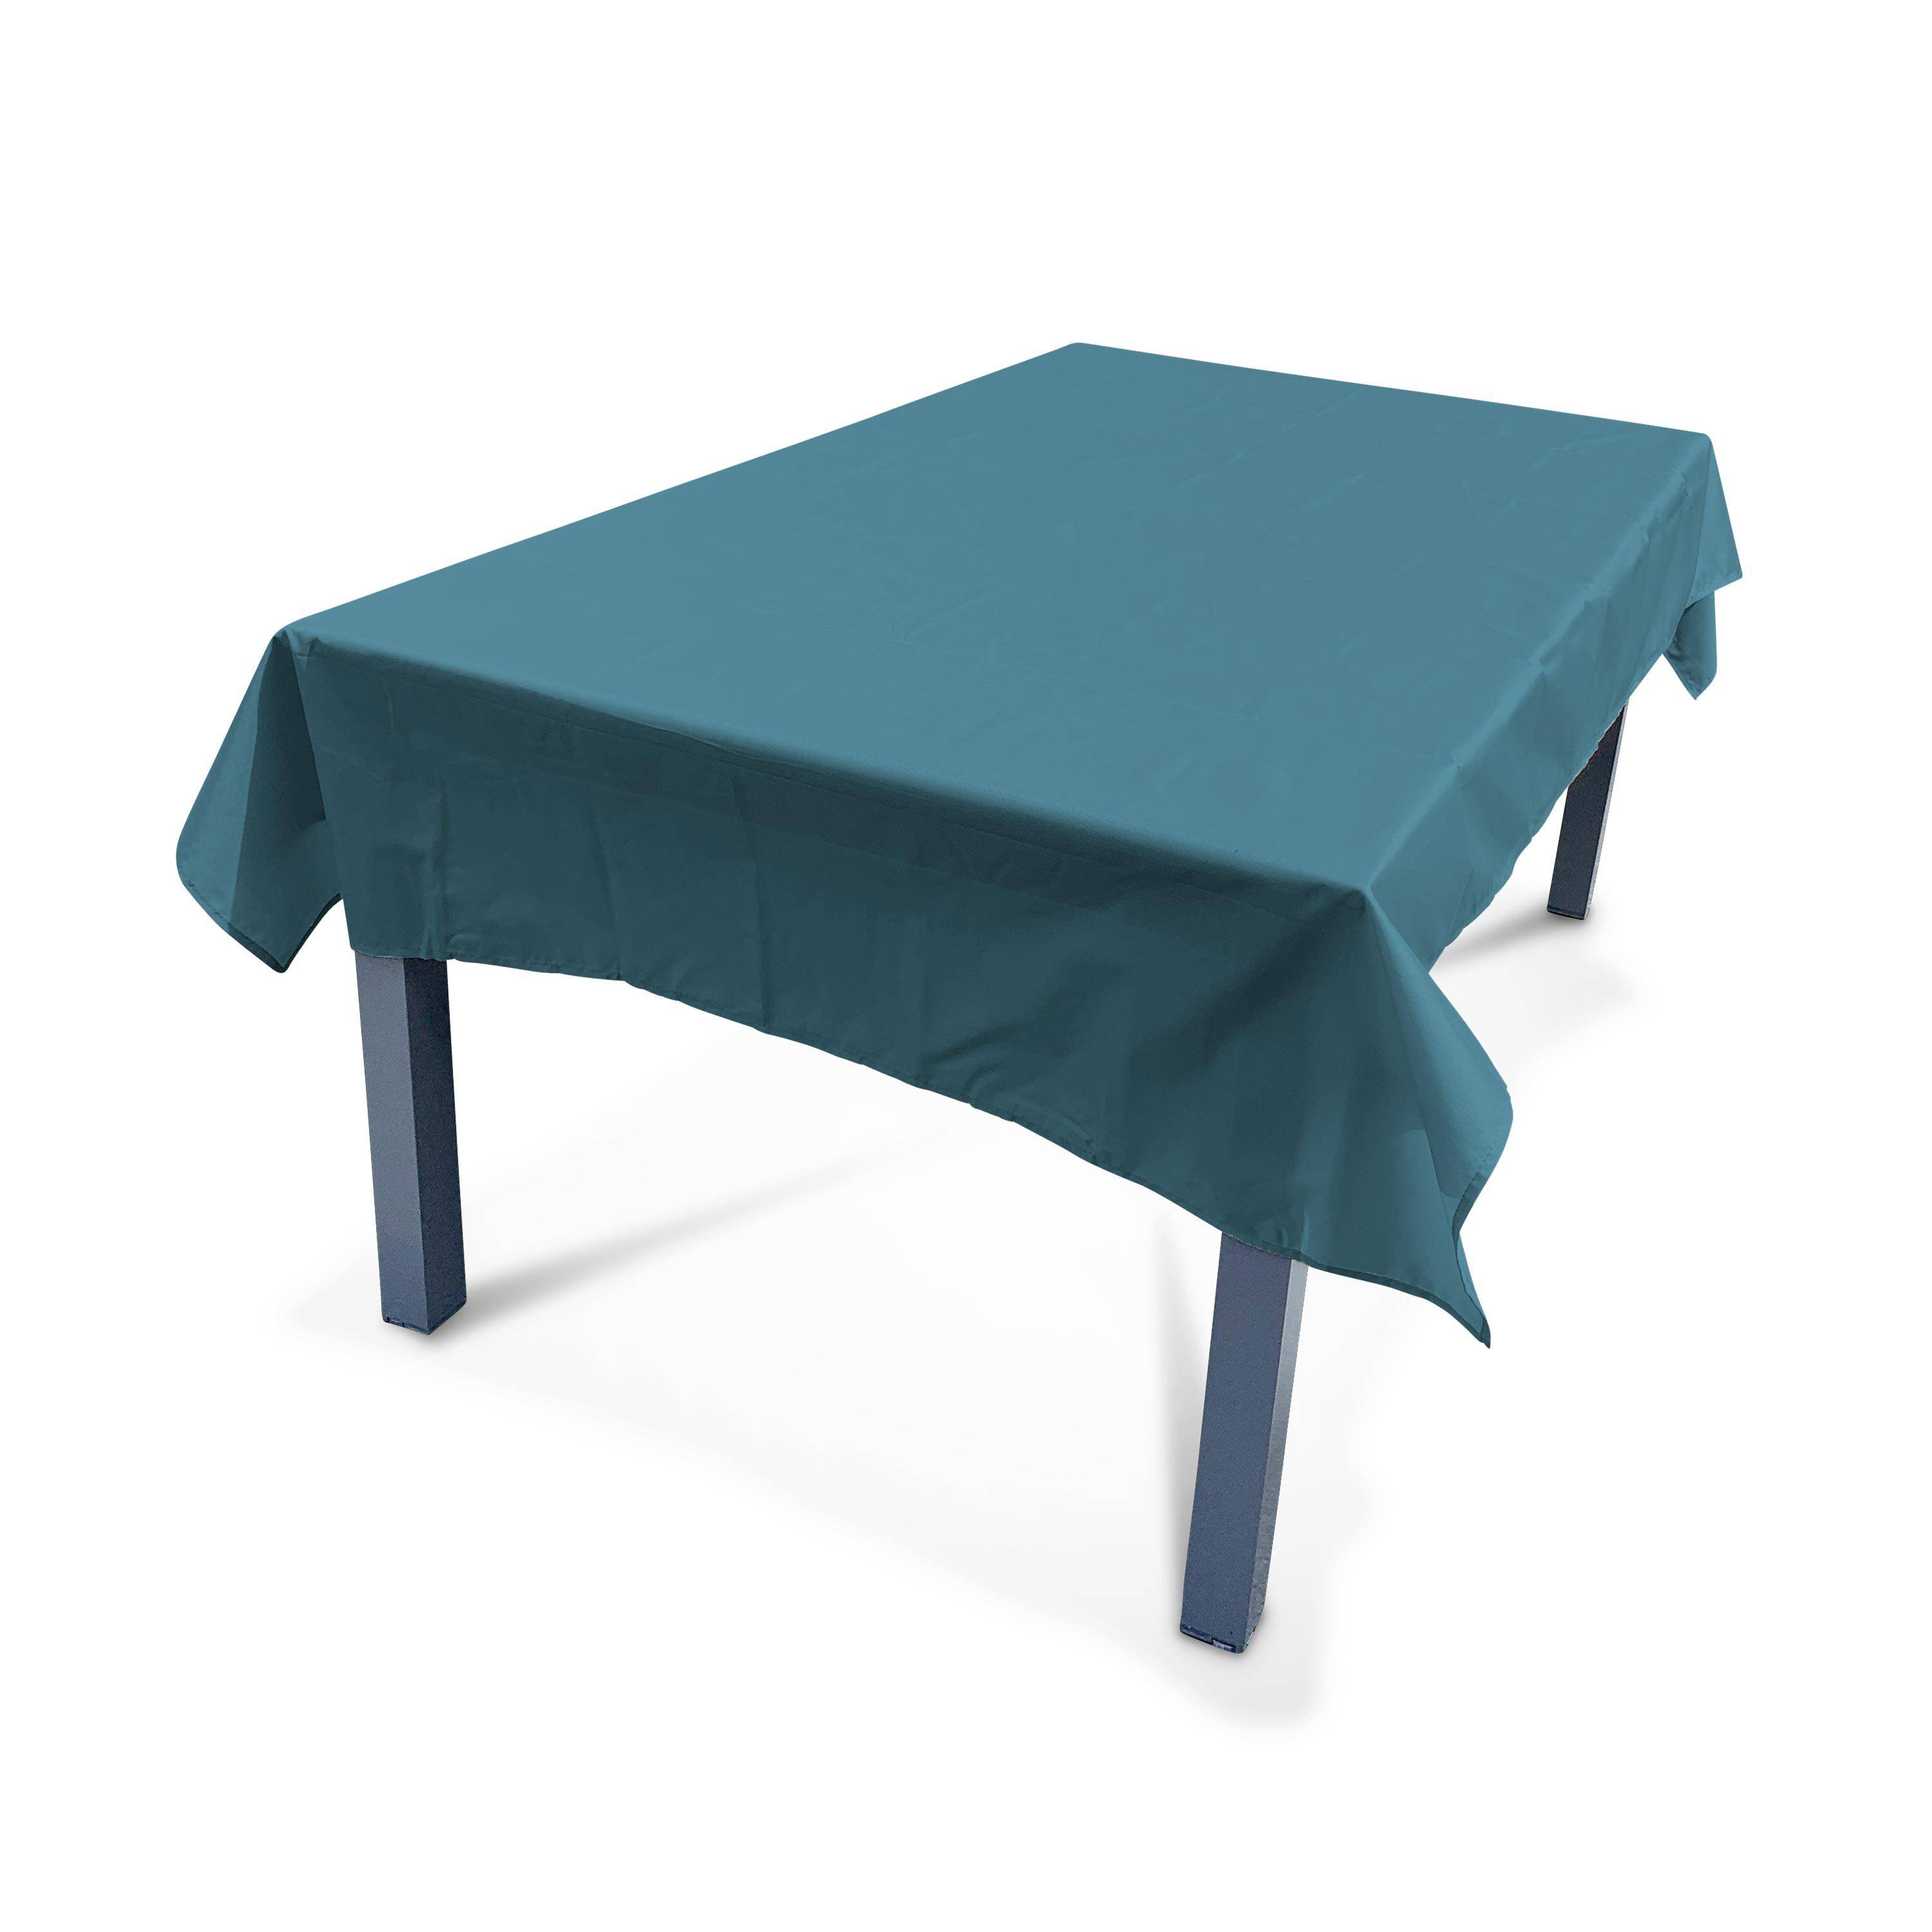 Kollection EXOTIQUE - Outdoor-Tischdecke 140 x 240 cm Entenblau, 100% Polyester, schützt den Tisch, UV-Schutz, sommerlicher Stil Photo1